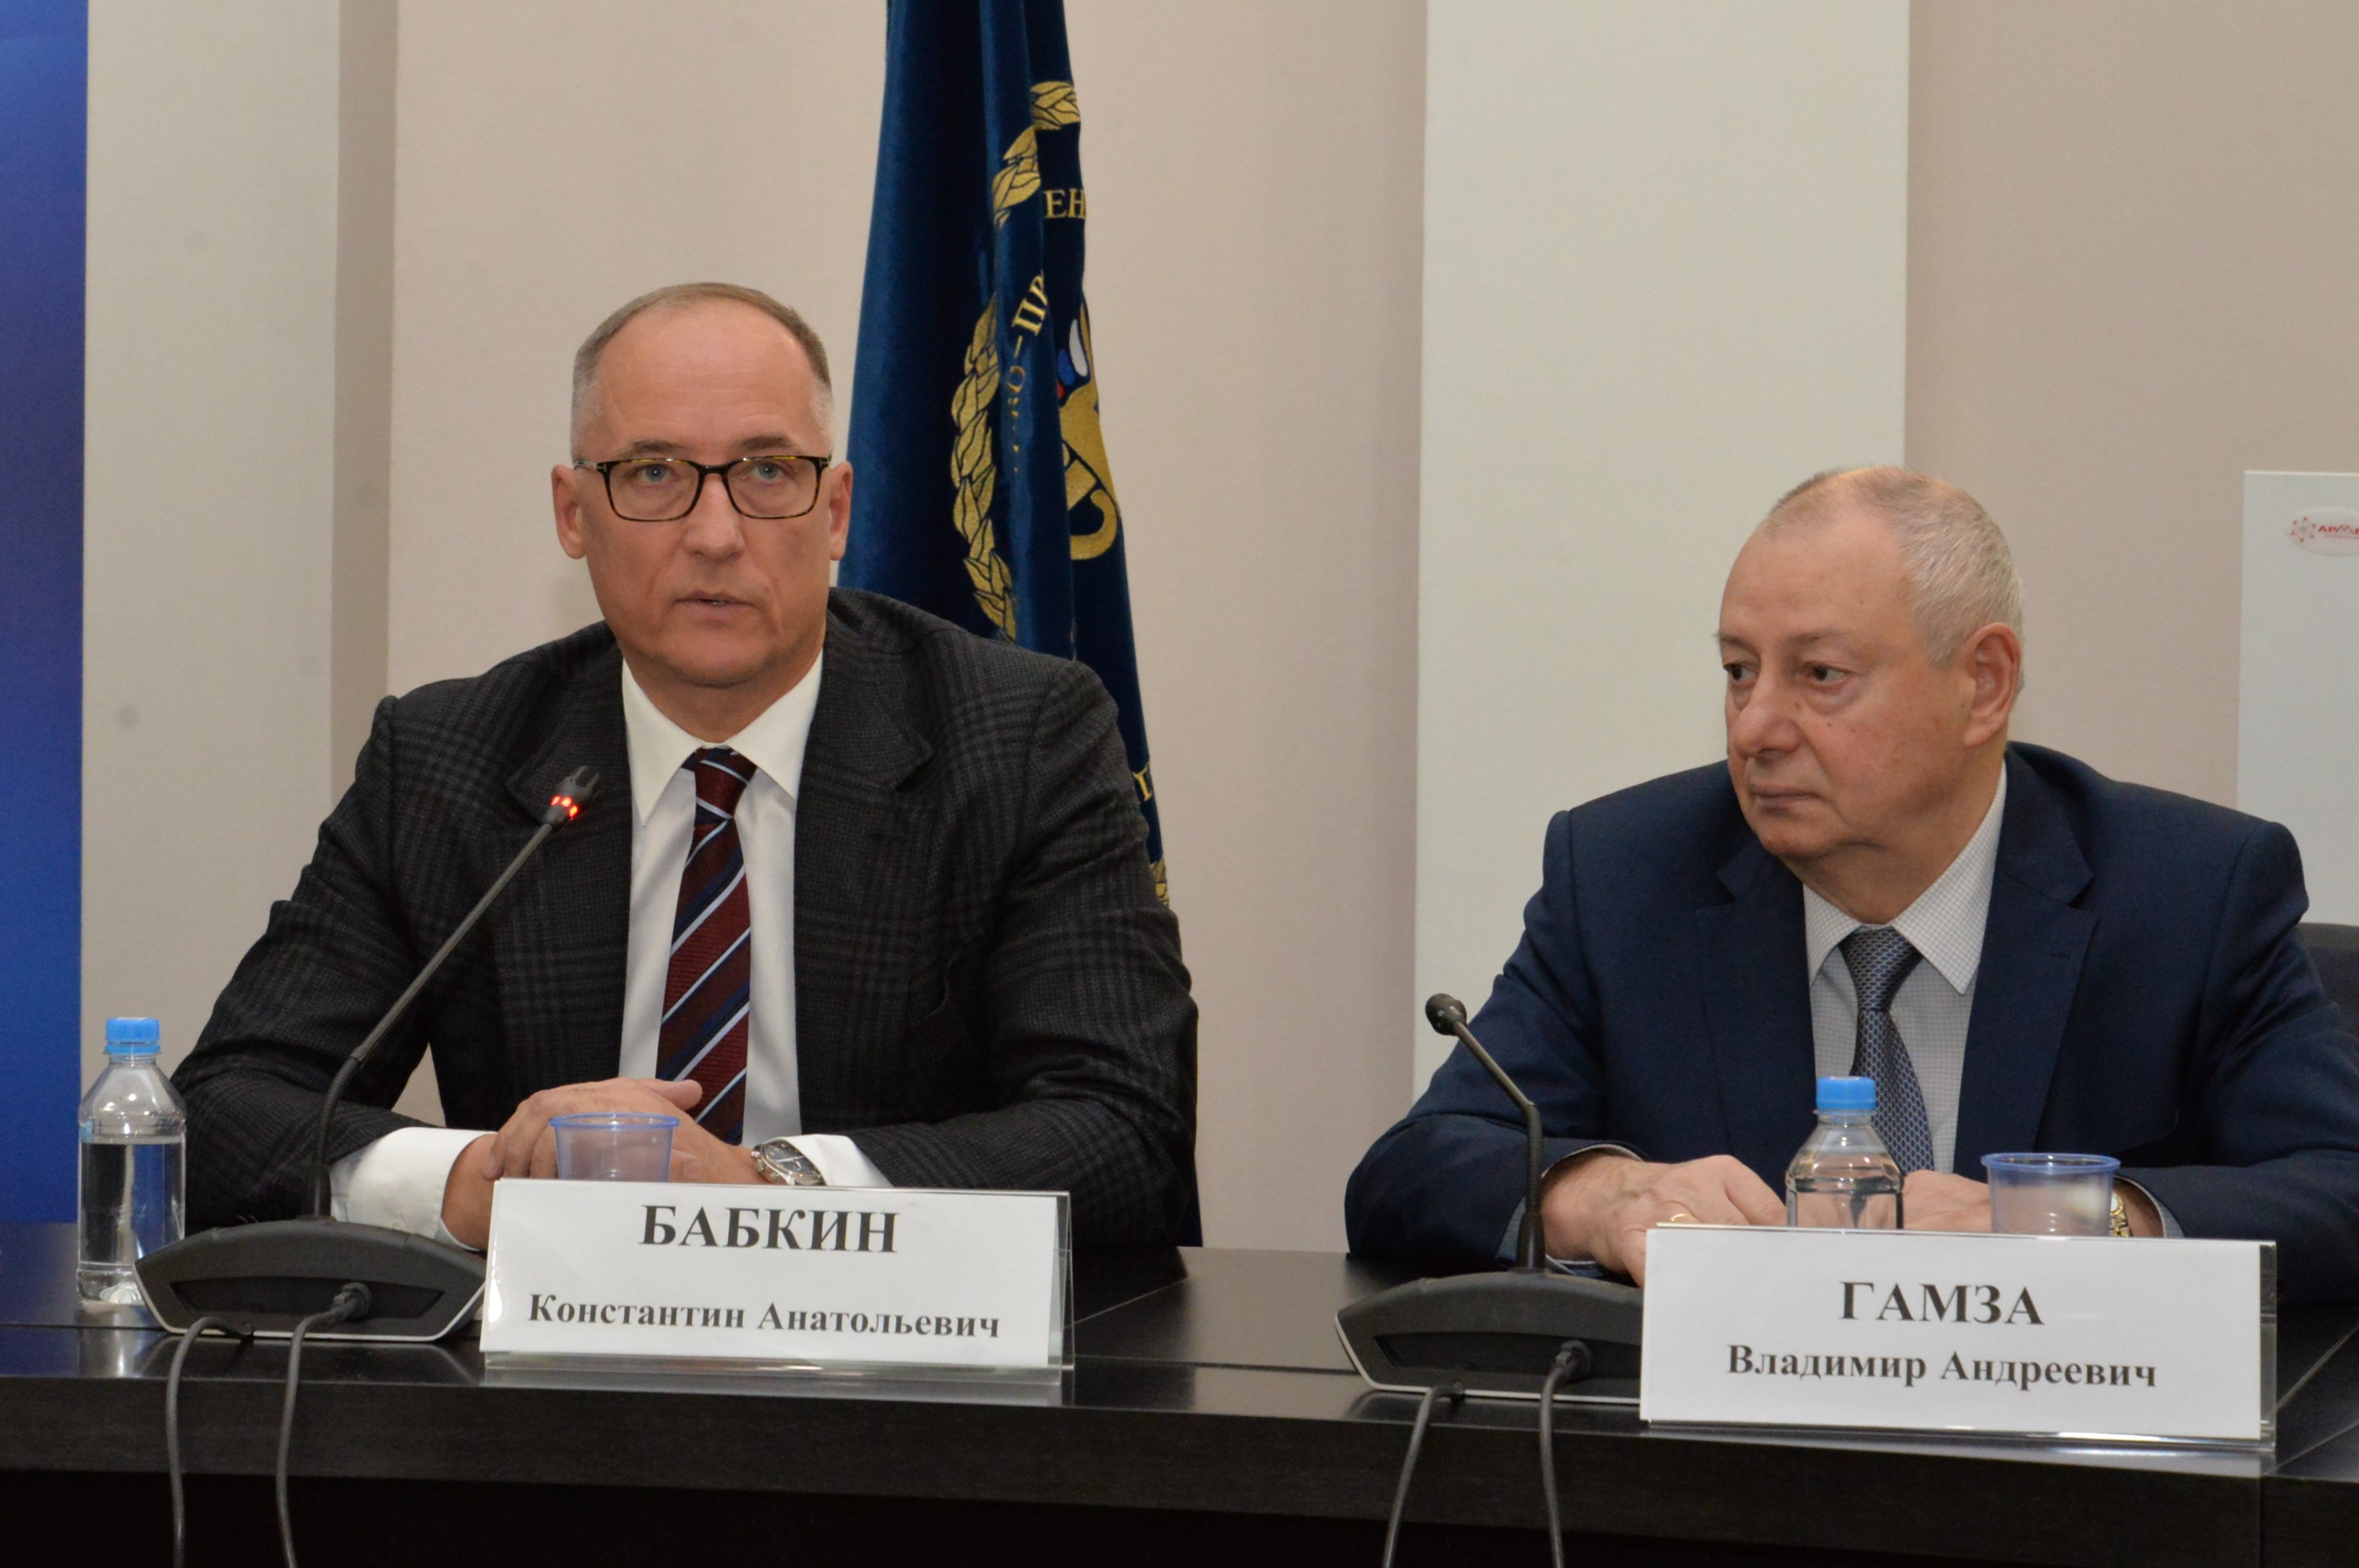 На совместном заседании советов ТПП РФ обсудили роль и возможности финансового сектора в поддержке промышленной кооперации в ЕАЭС 